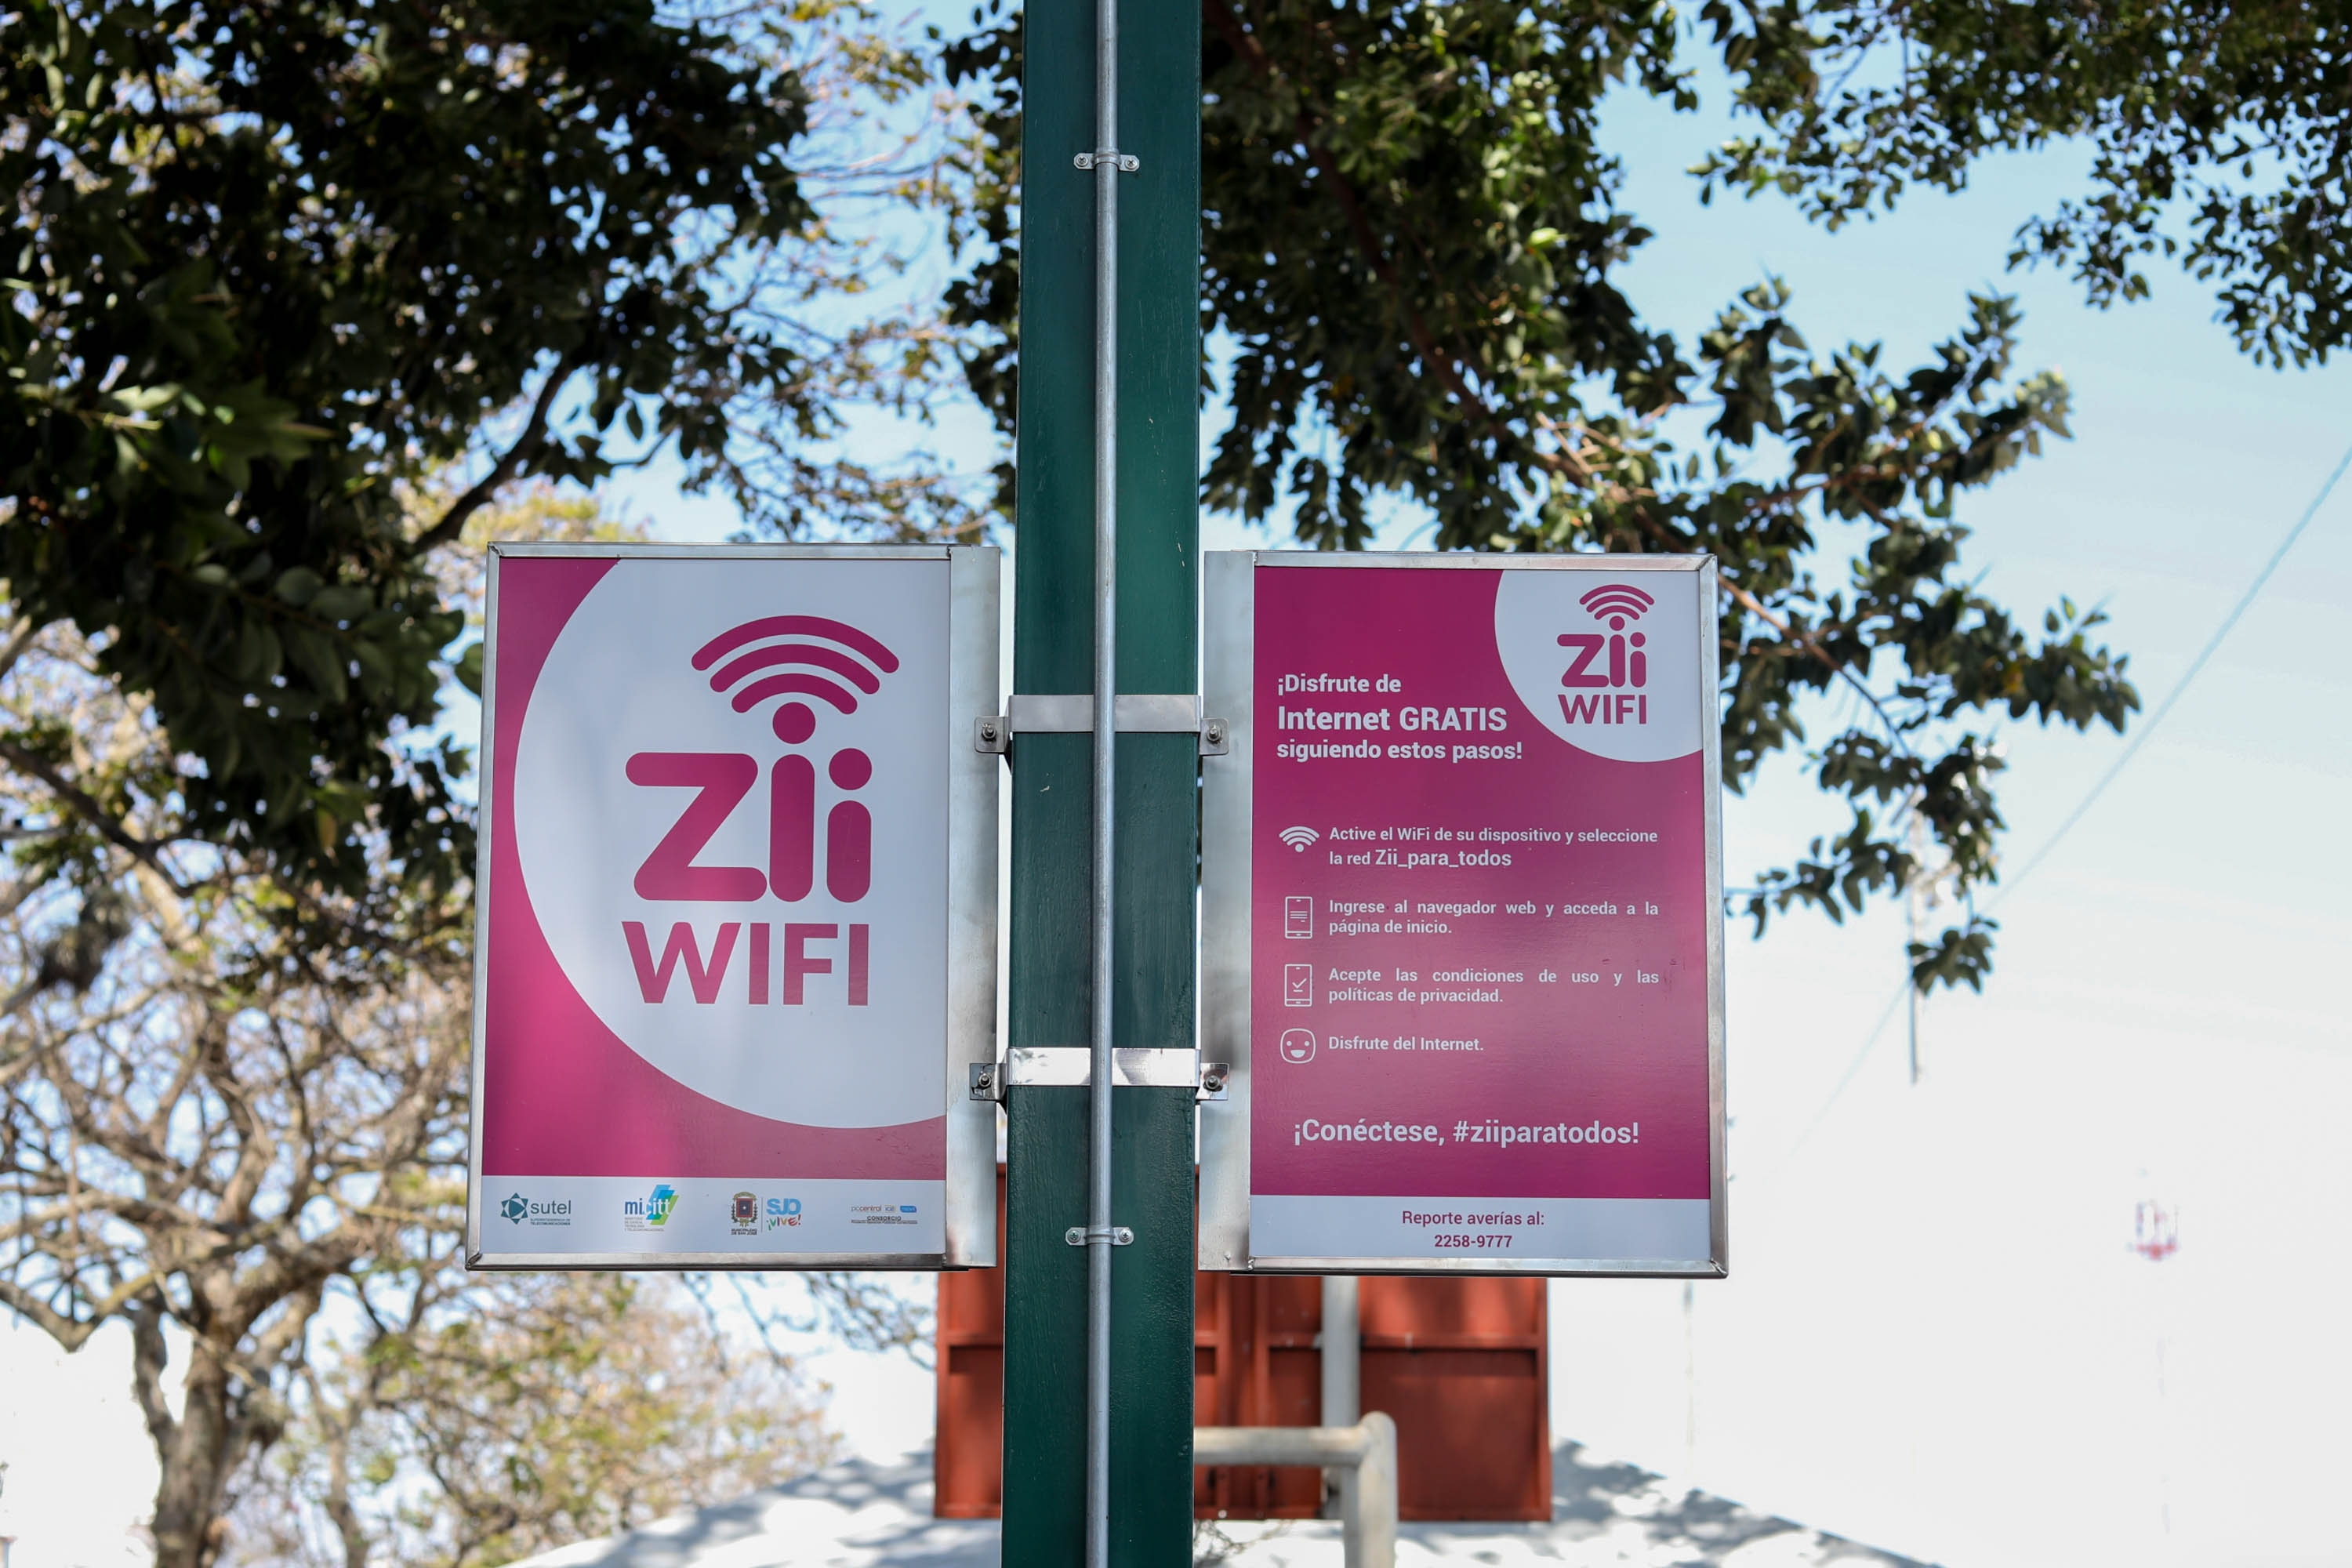 515 espacios públicos contarán con servicio de internet Wifi gratuito